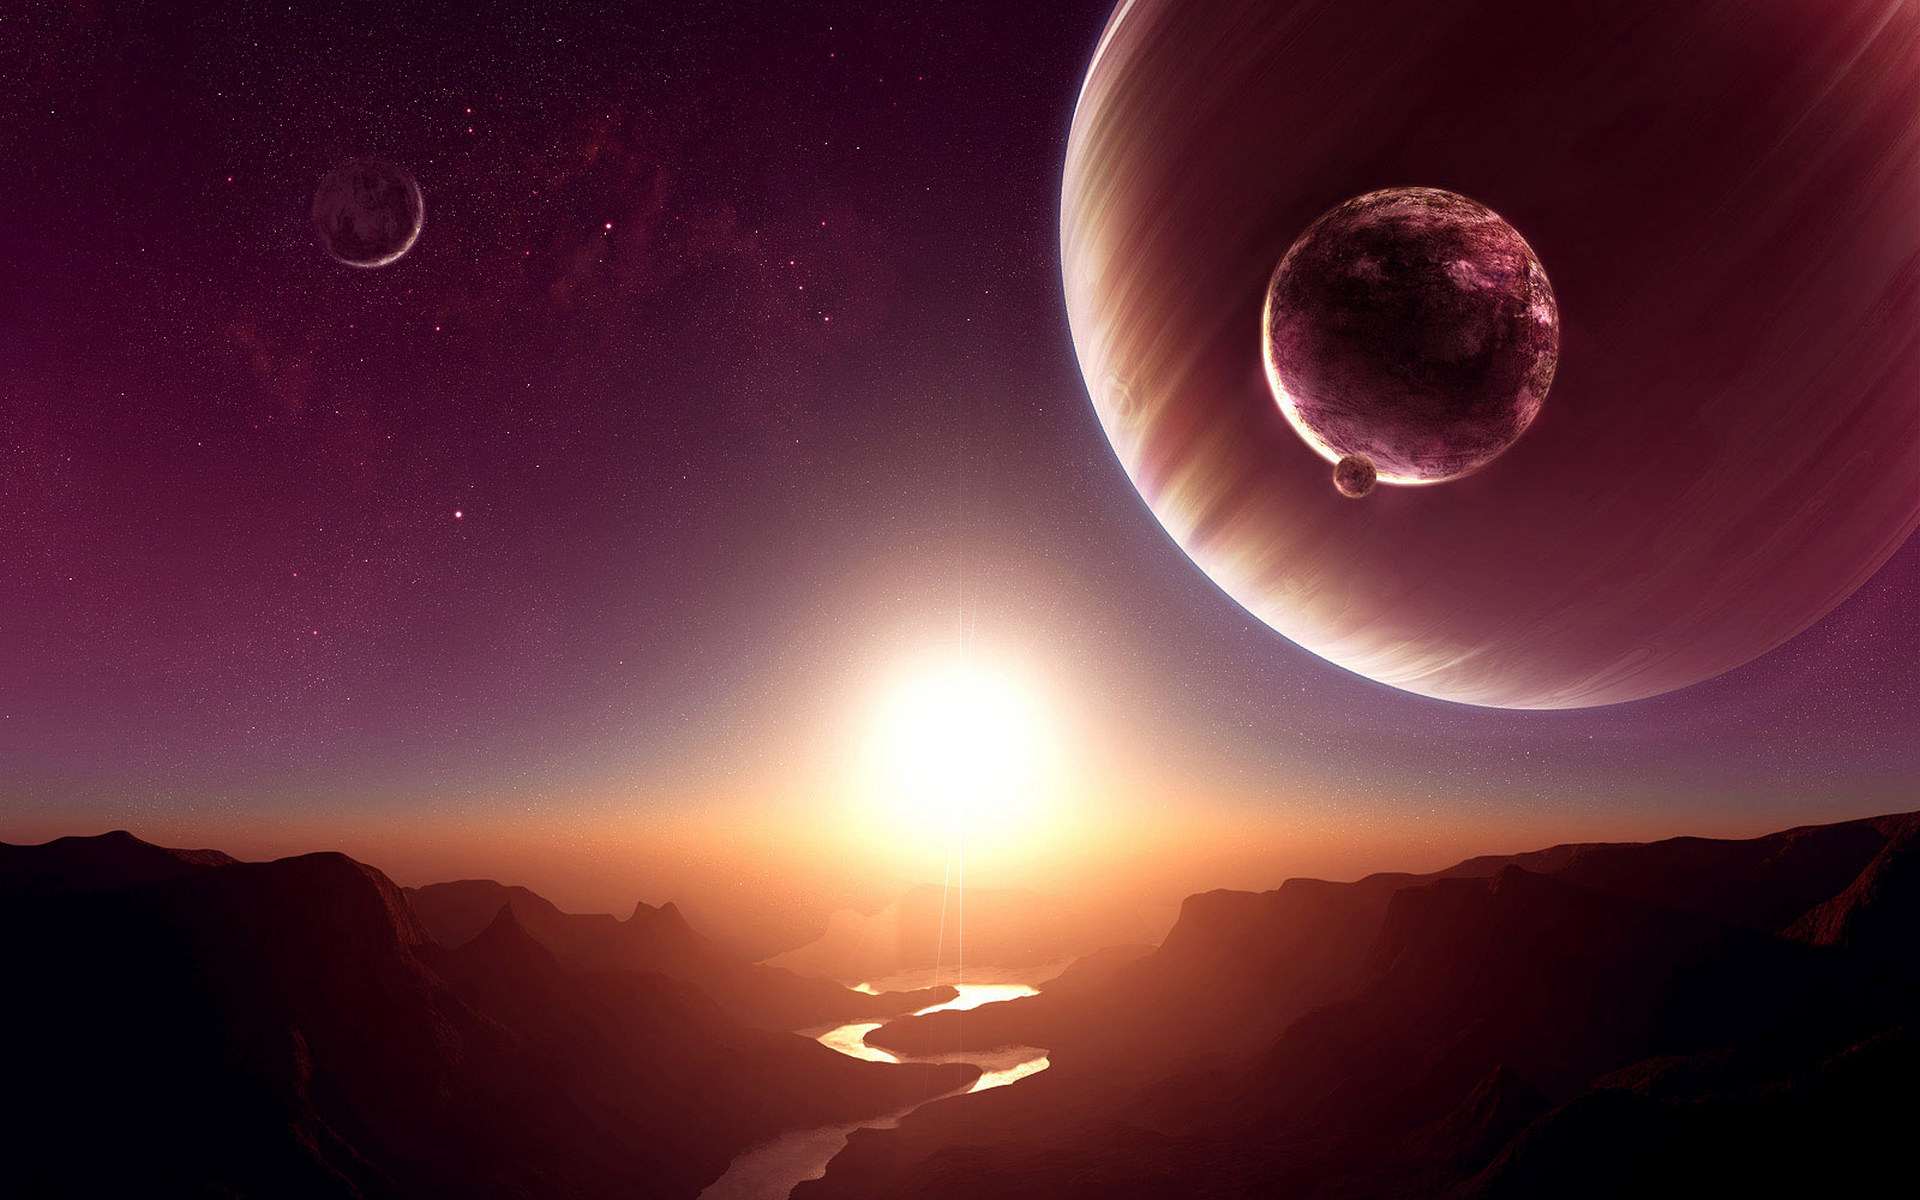 3d обои Скалистая долина с небольшой речушкой на неизвестной планете  солнце # 81740